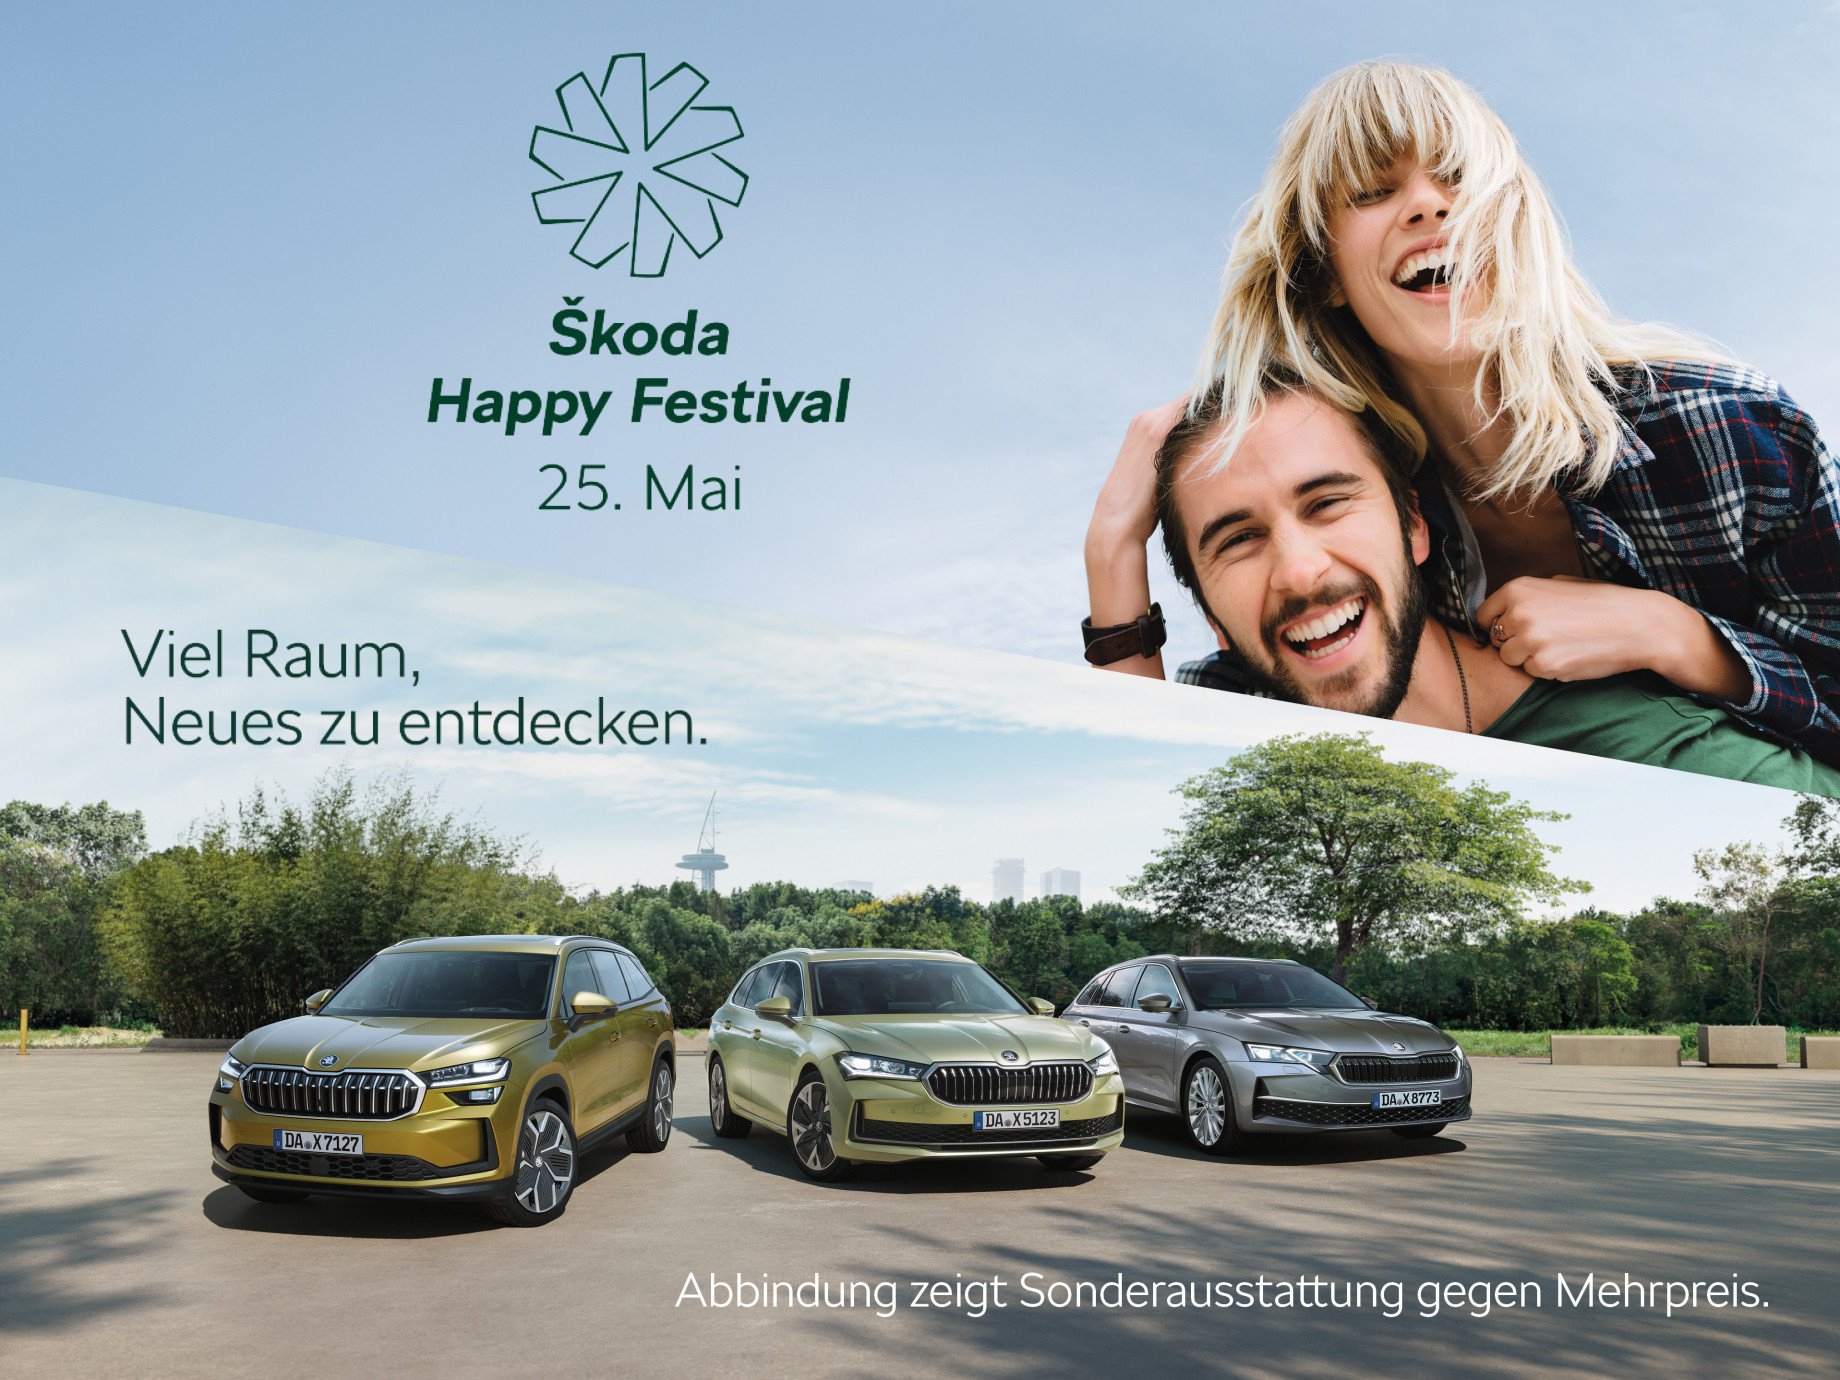 Škoda Happy Festival: Viel Raum, Neues zu entdecken – Wir präsentieren Ihnen die neuen Highlights, die Sie sicher happy machen!